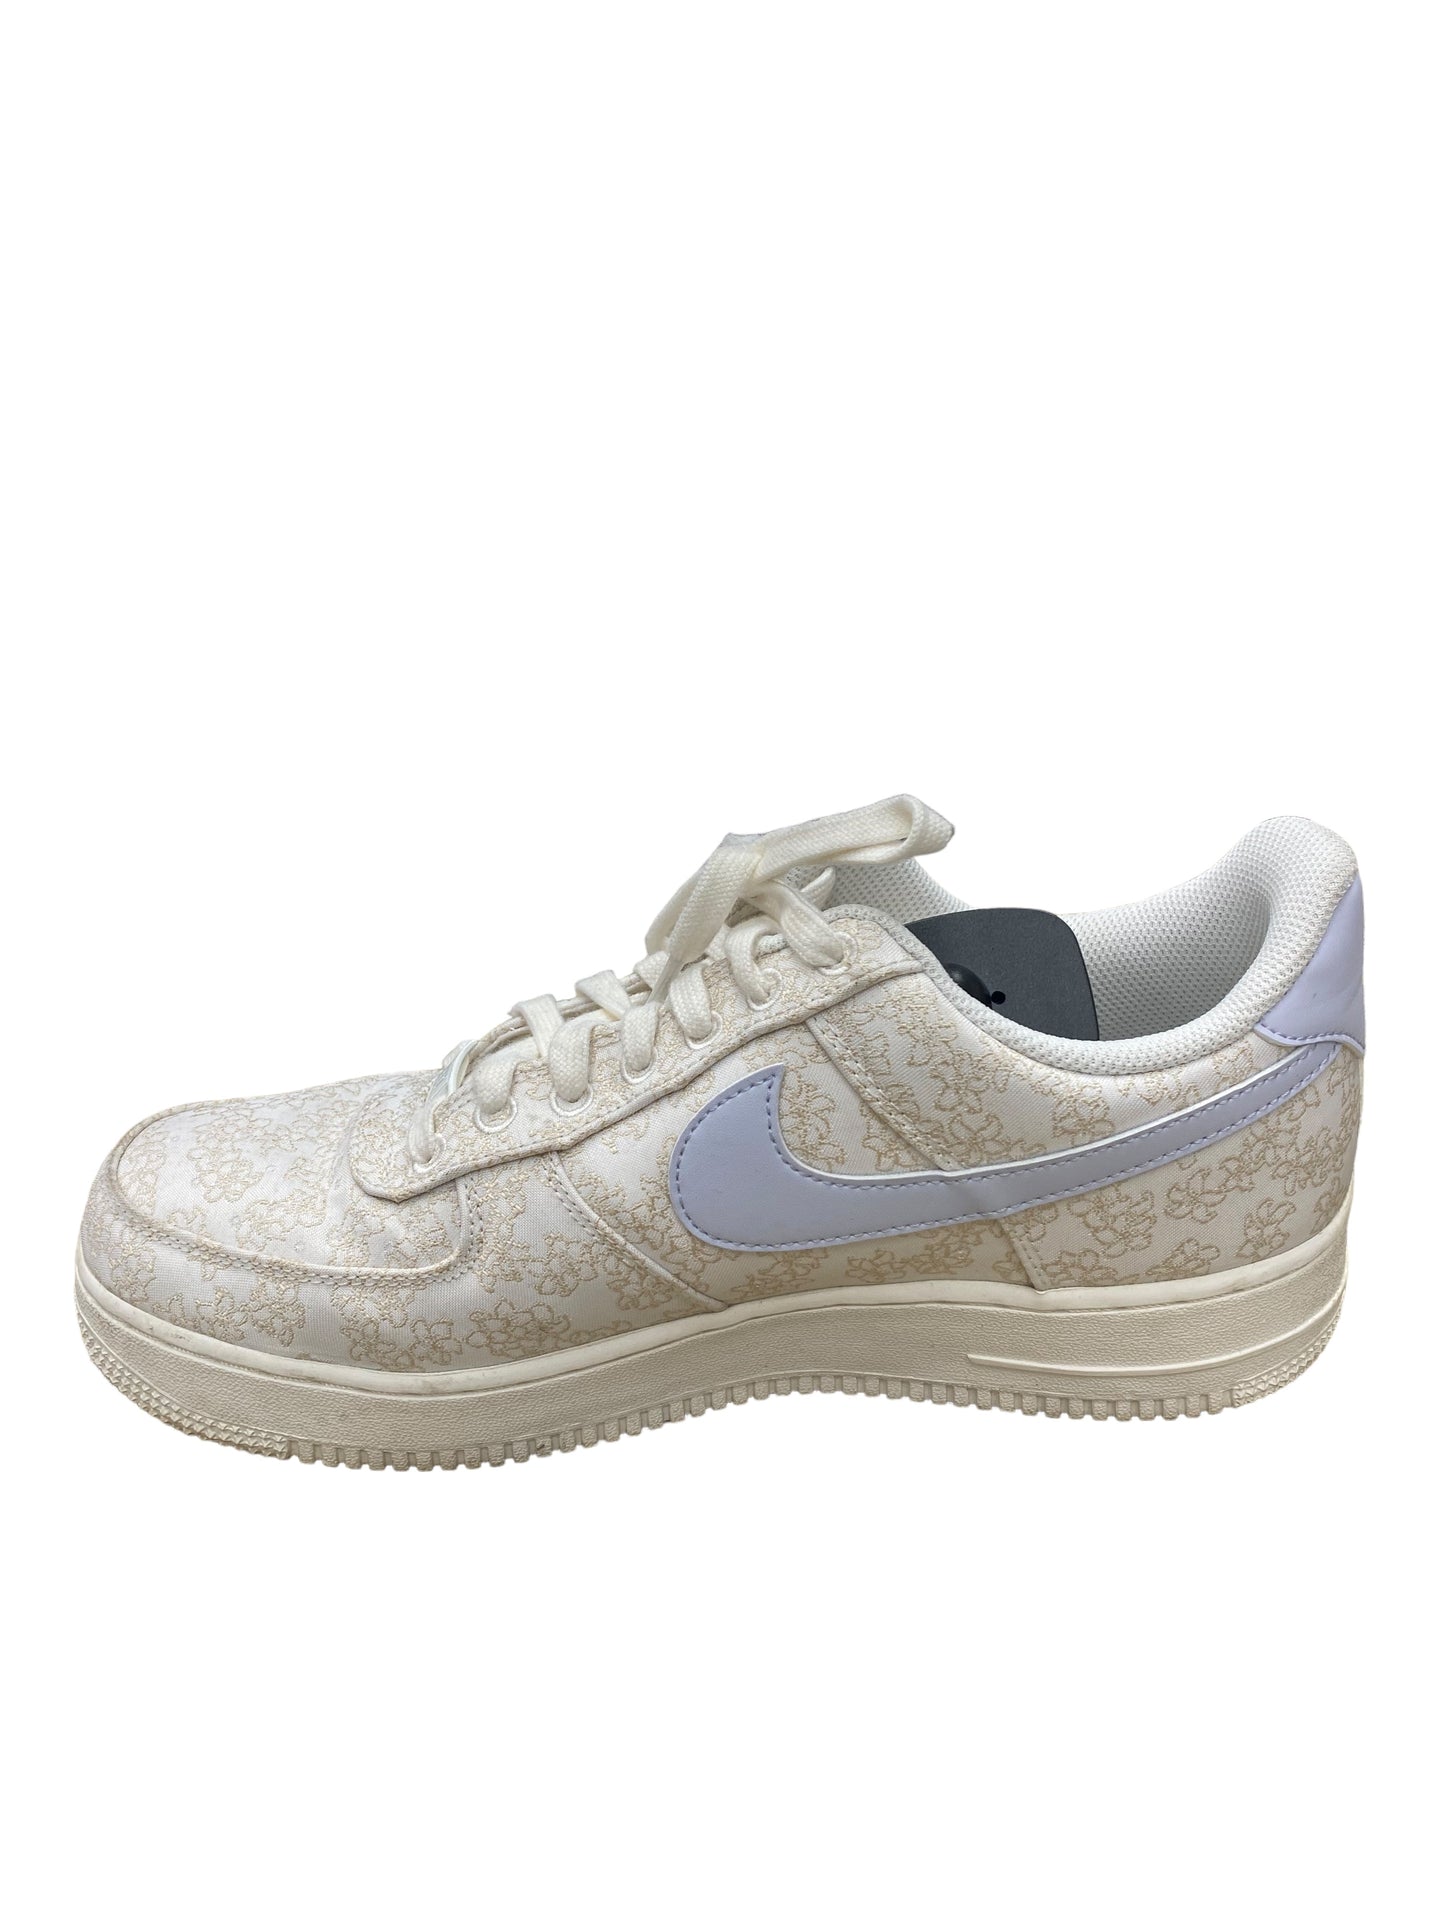 Blue & White Shoes Athletic Nike, Size 11